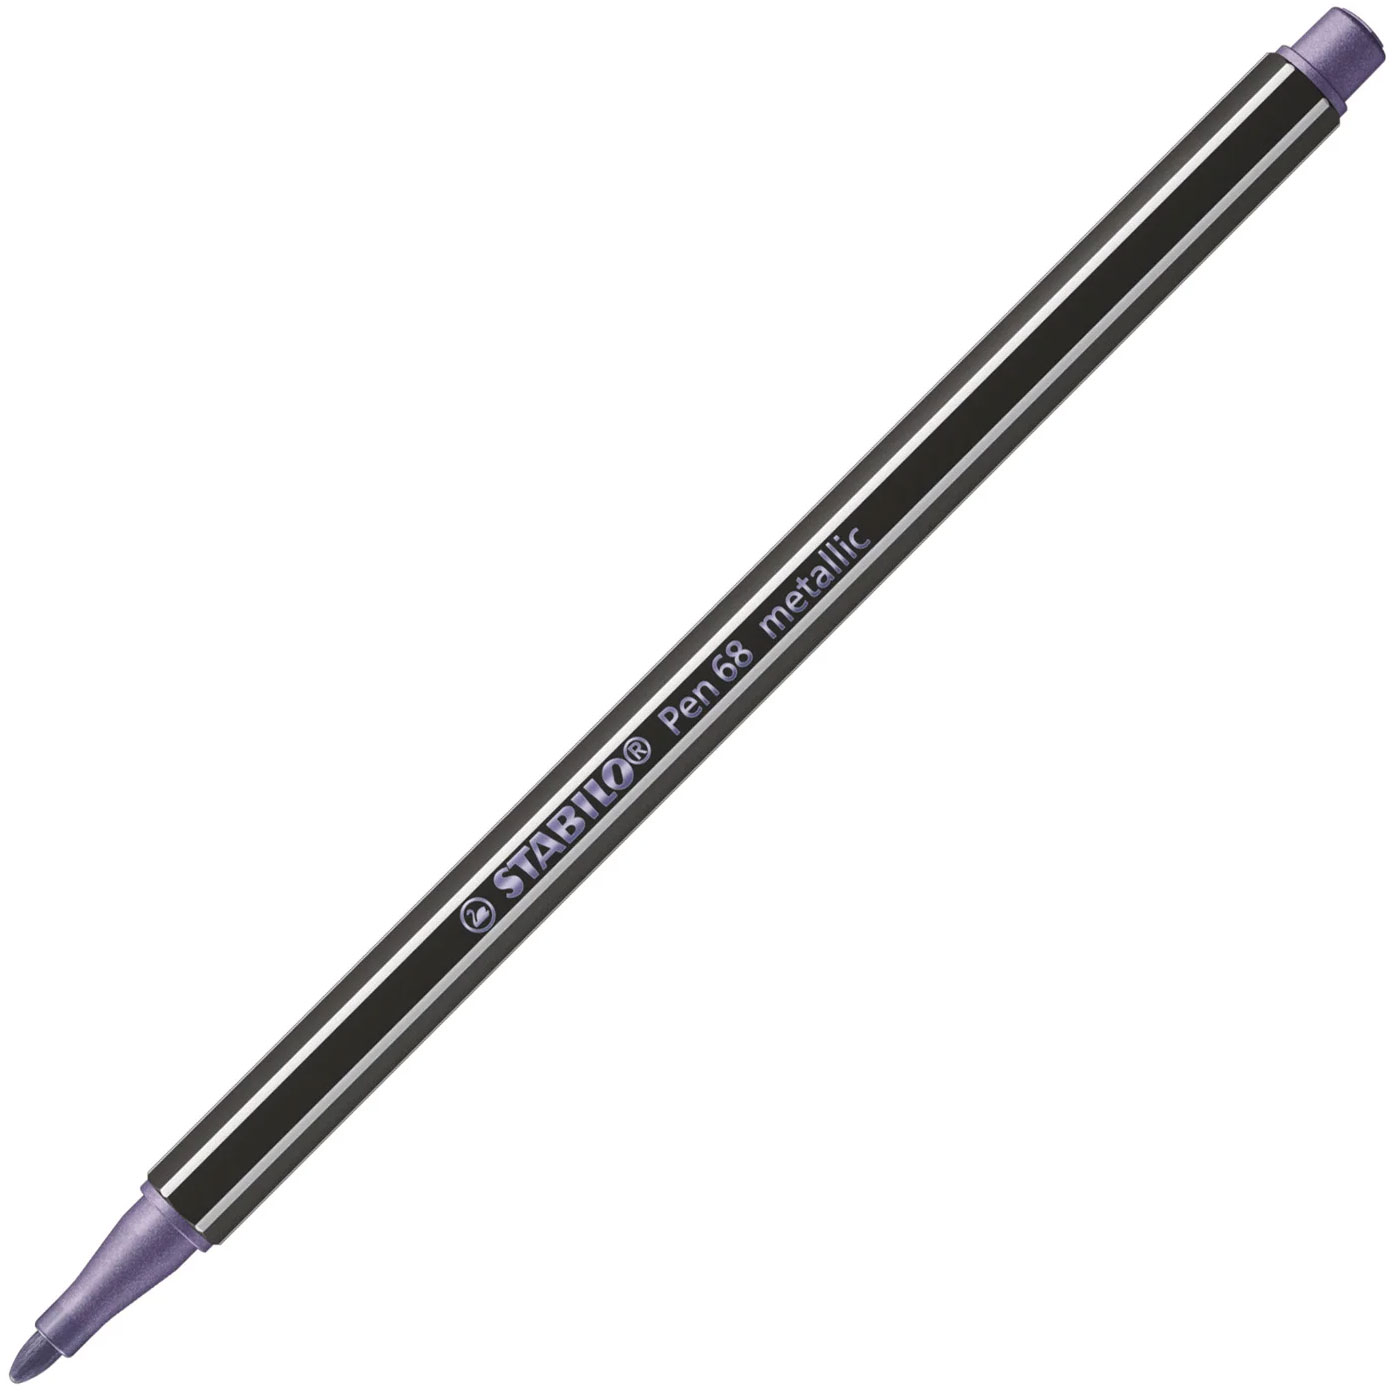 STABILO - Stabilo Pen 68 Μαρκαδόρος Σχεδίου 1.4 mm Μεταλλικό Μωβ - Stabilo 68 Metallic Purple 855 68/855